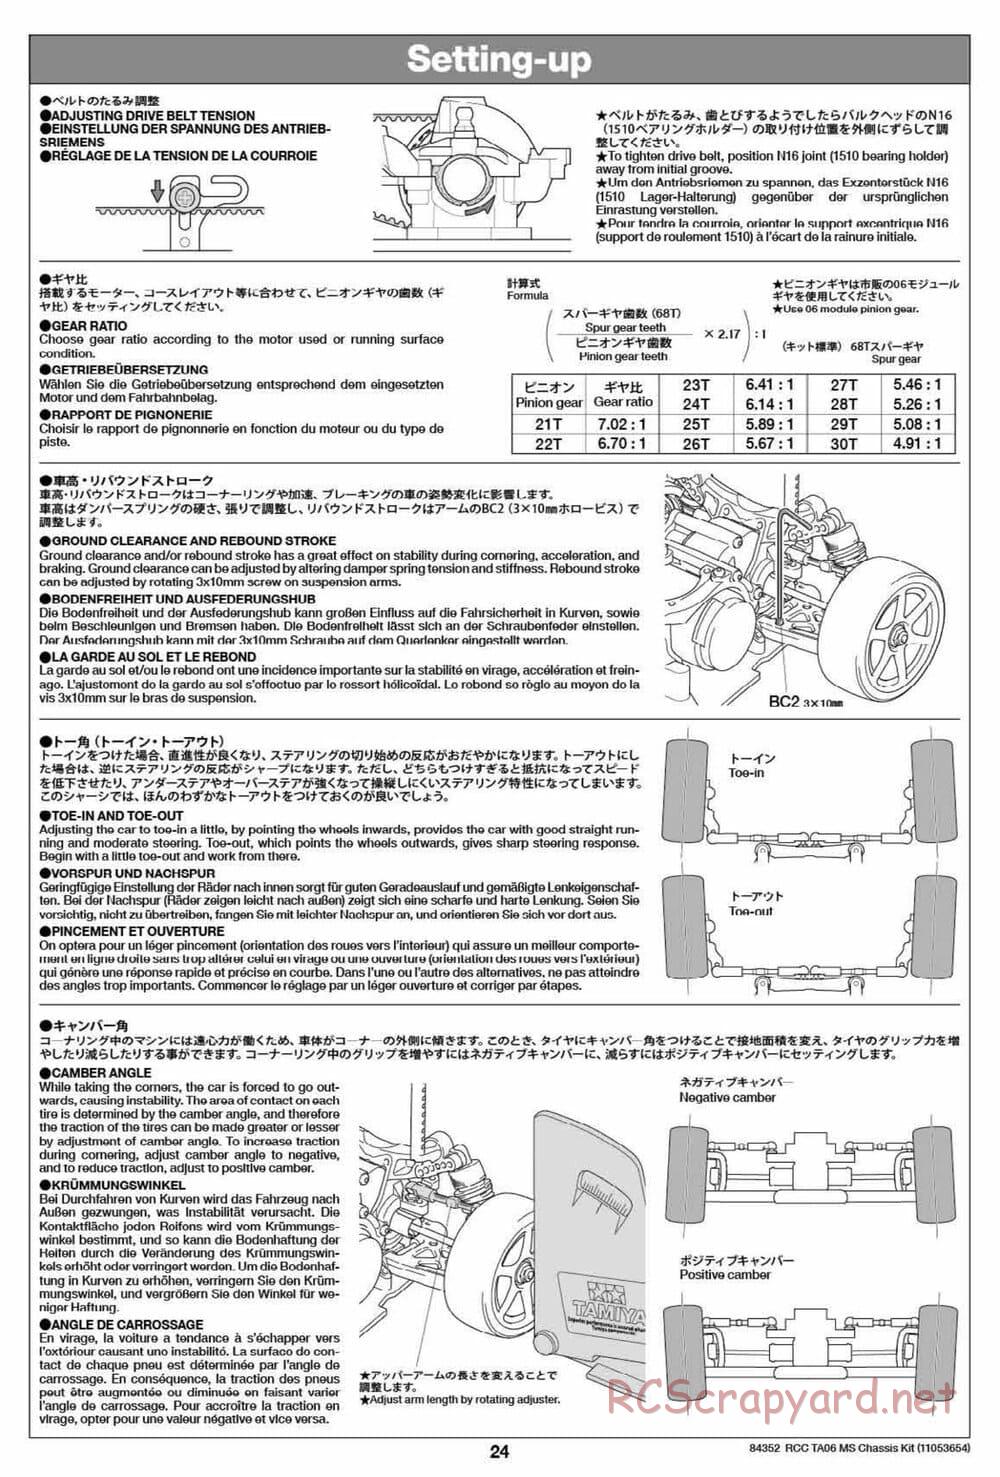 Tamiya - TA06 MS Chassis - Manual - Page 24